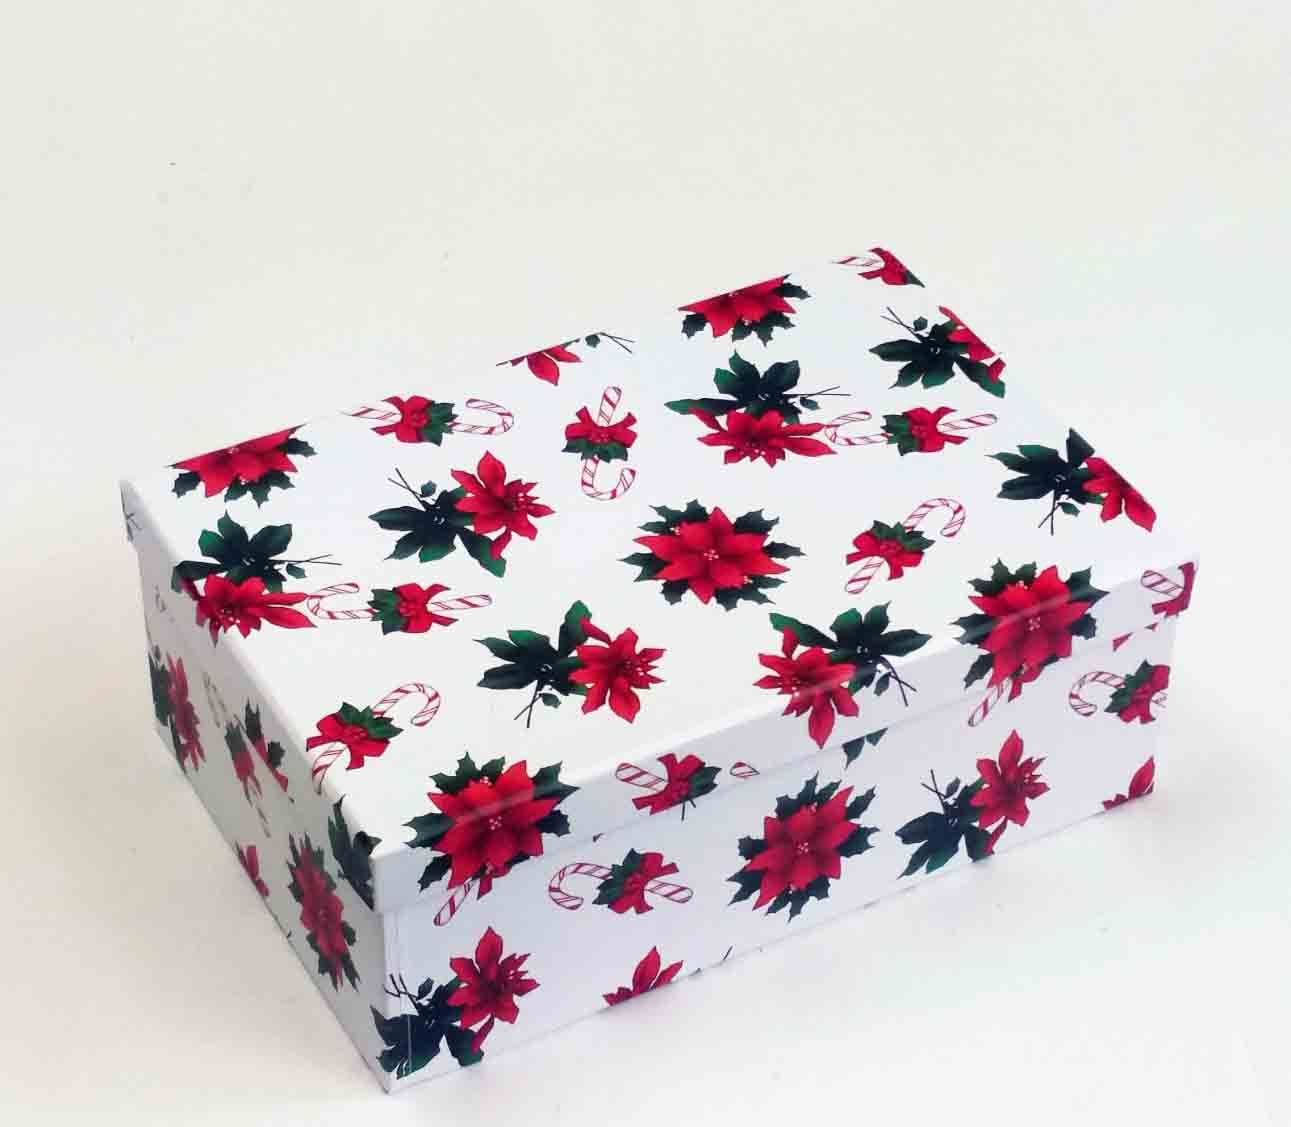 X7695 - Rectangular Gift Boxes - 10.95 set of 5